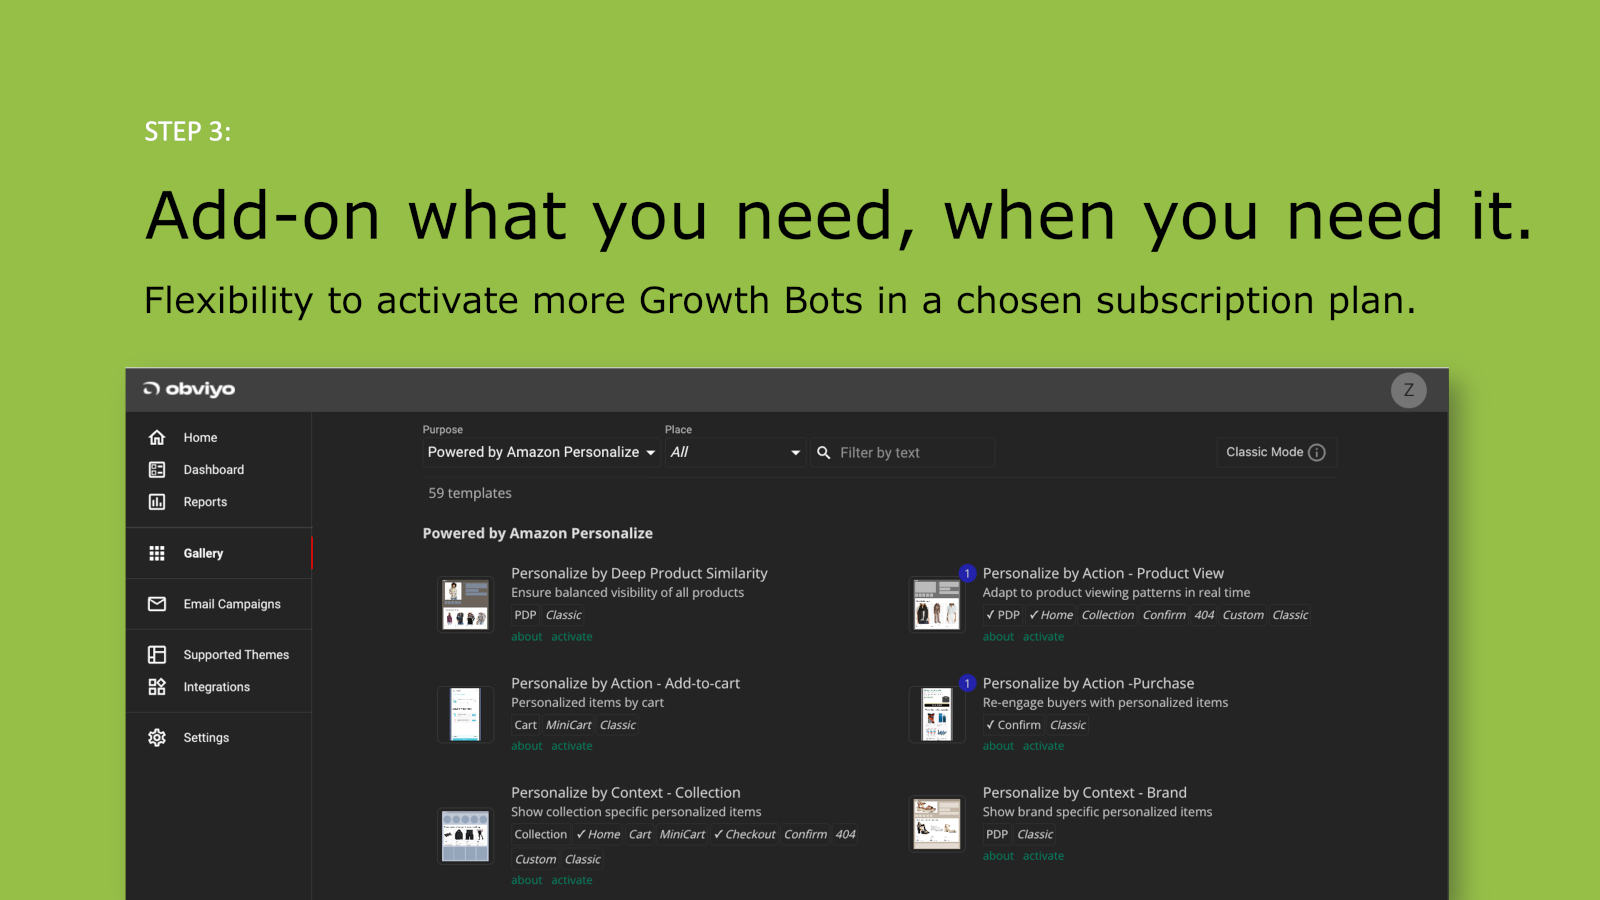 Añade más Growth Bots según los necesites.